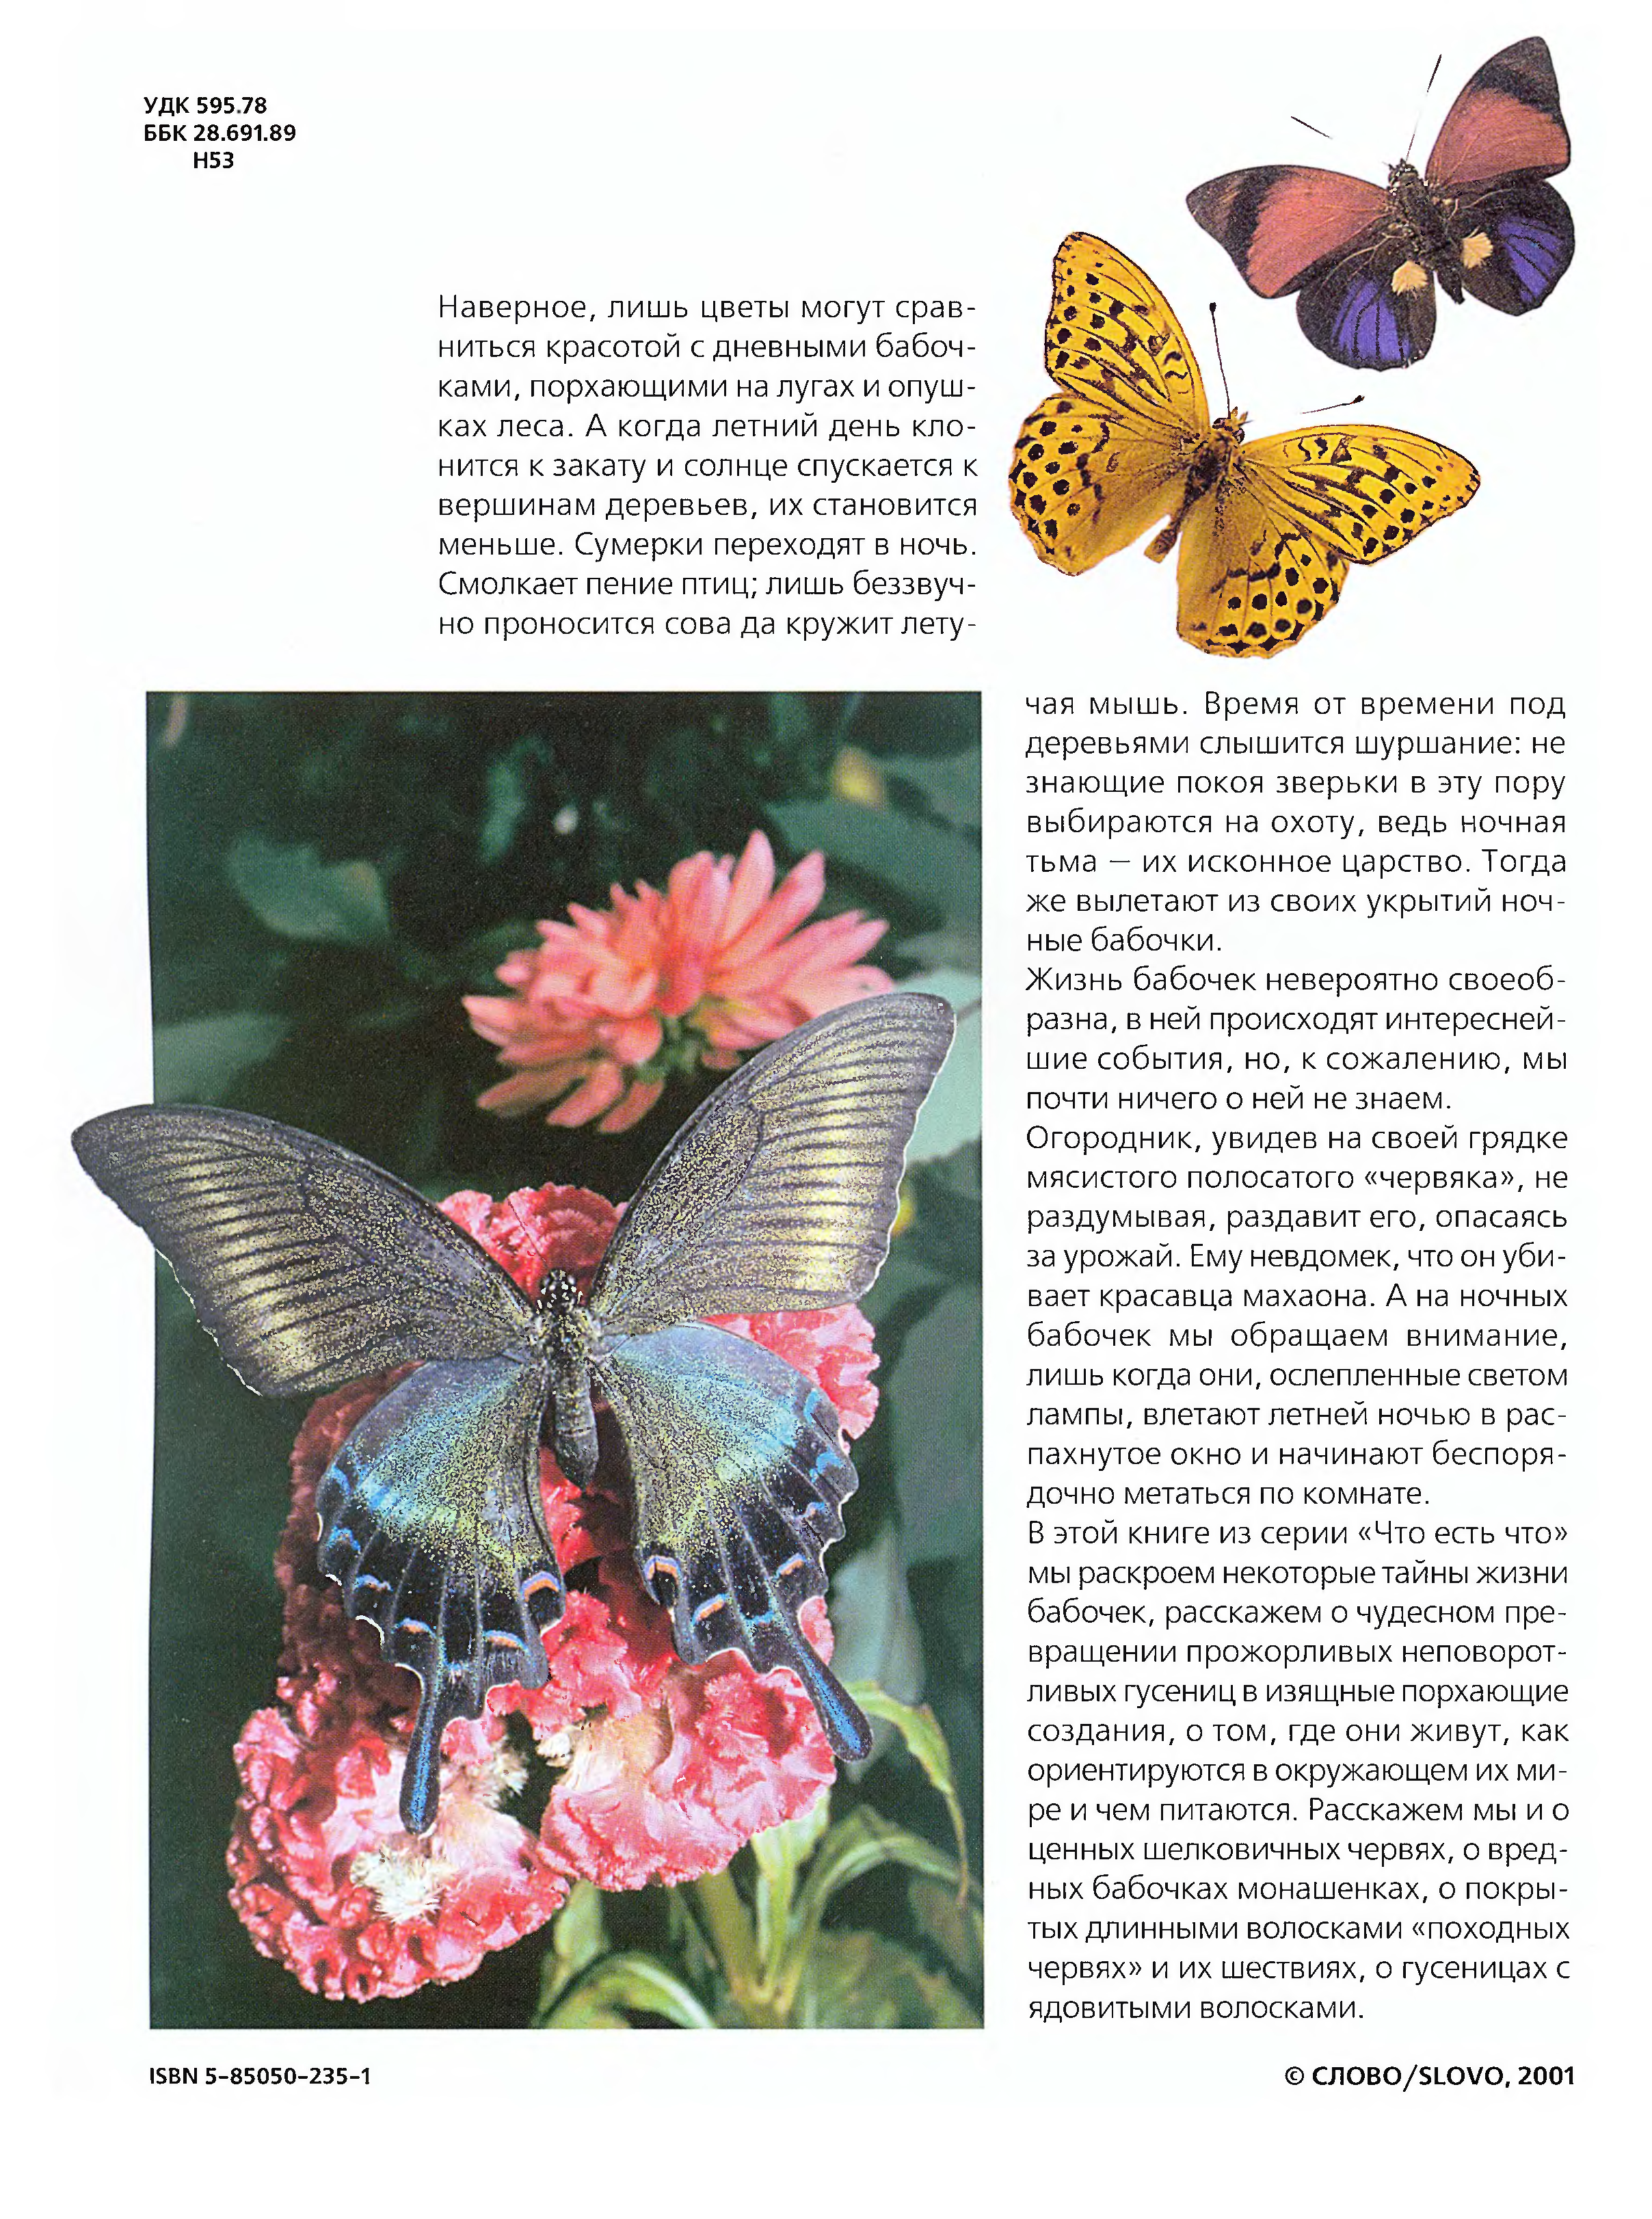 Жизнь бабочки. Читать про бабочек. Книга с бабочками. Книги про бабочек научные.